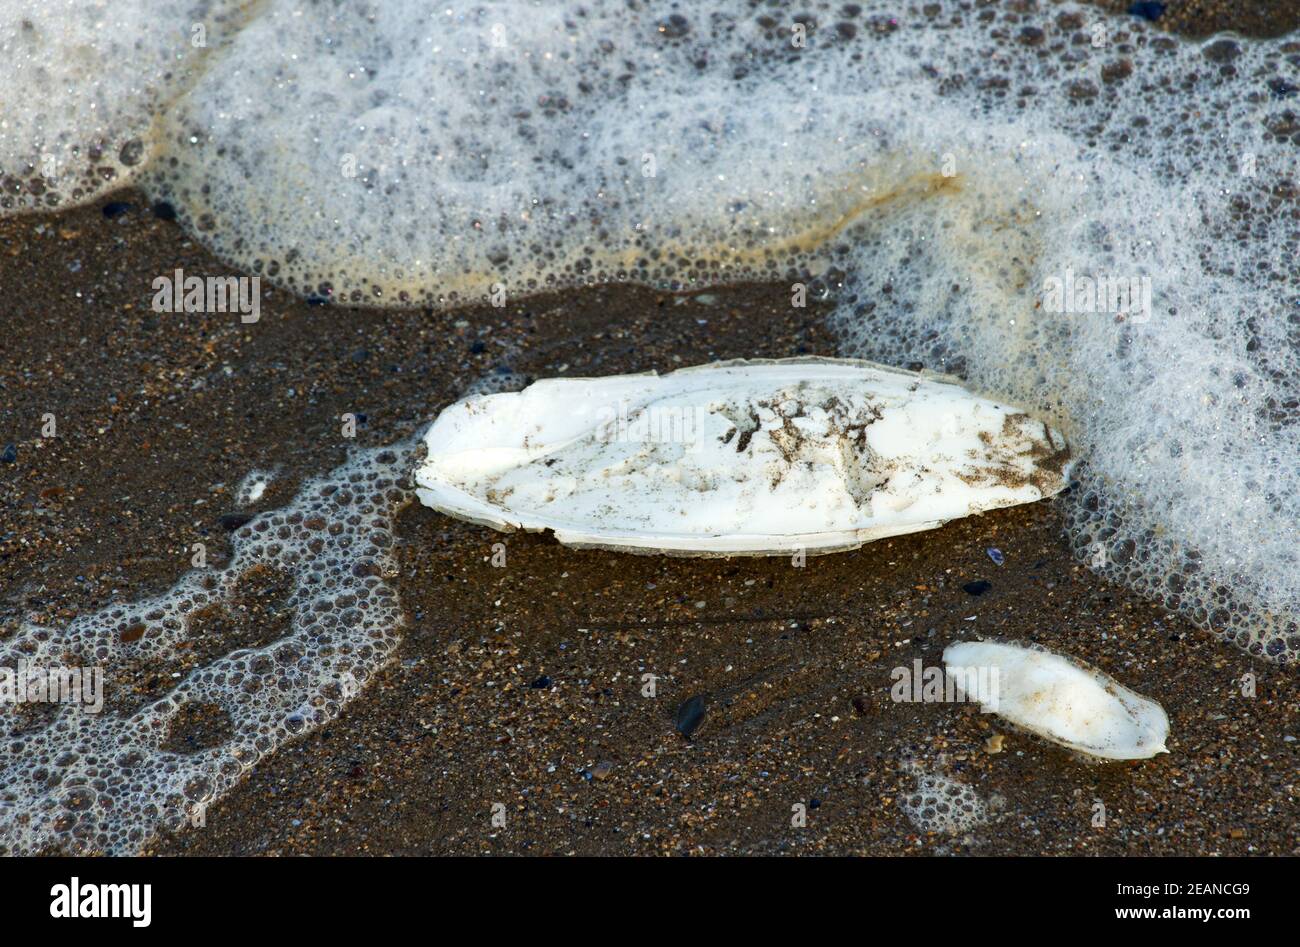 Le Cuttlebone est en fait la coquille interne d'un Cuttlefish commun, un type de mollusque céphalopode qui favorise les zones sablonneuses sous-littorales. Banque D'Images